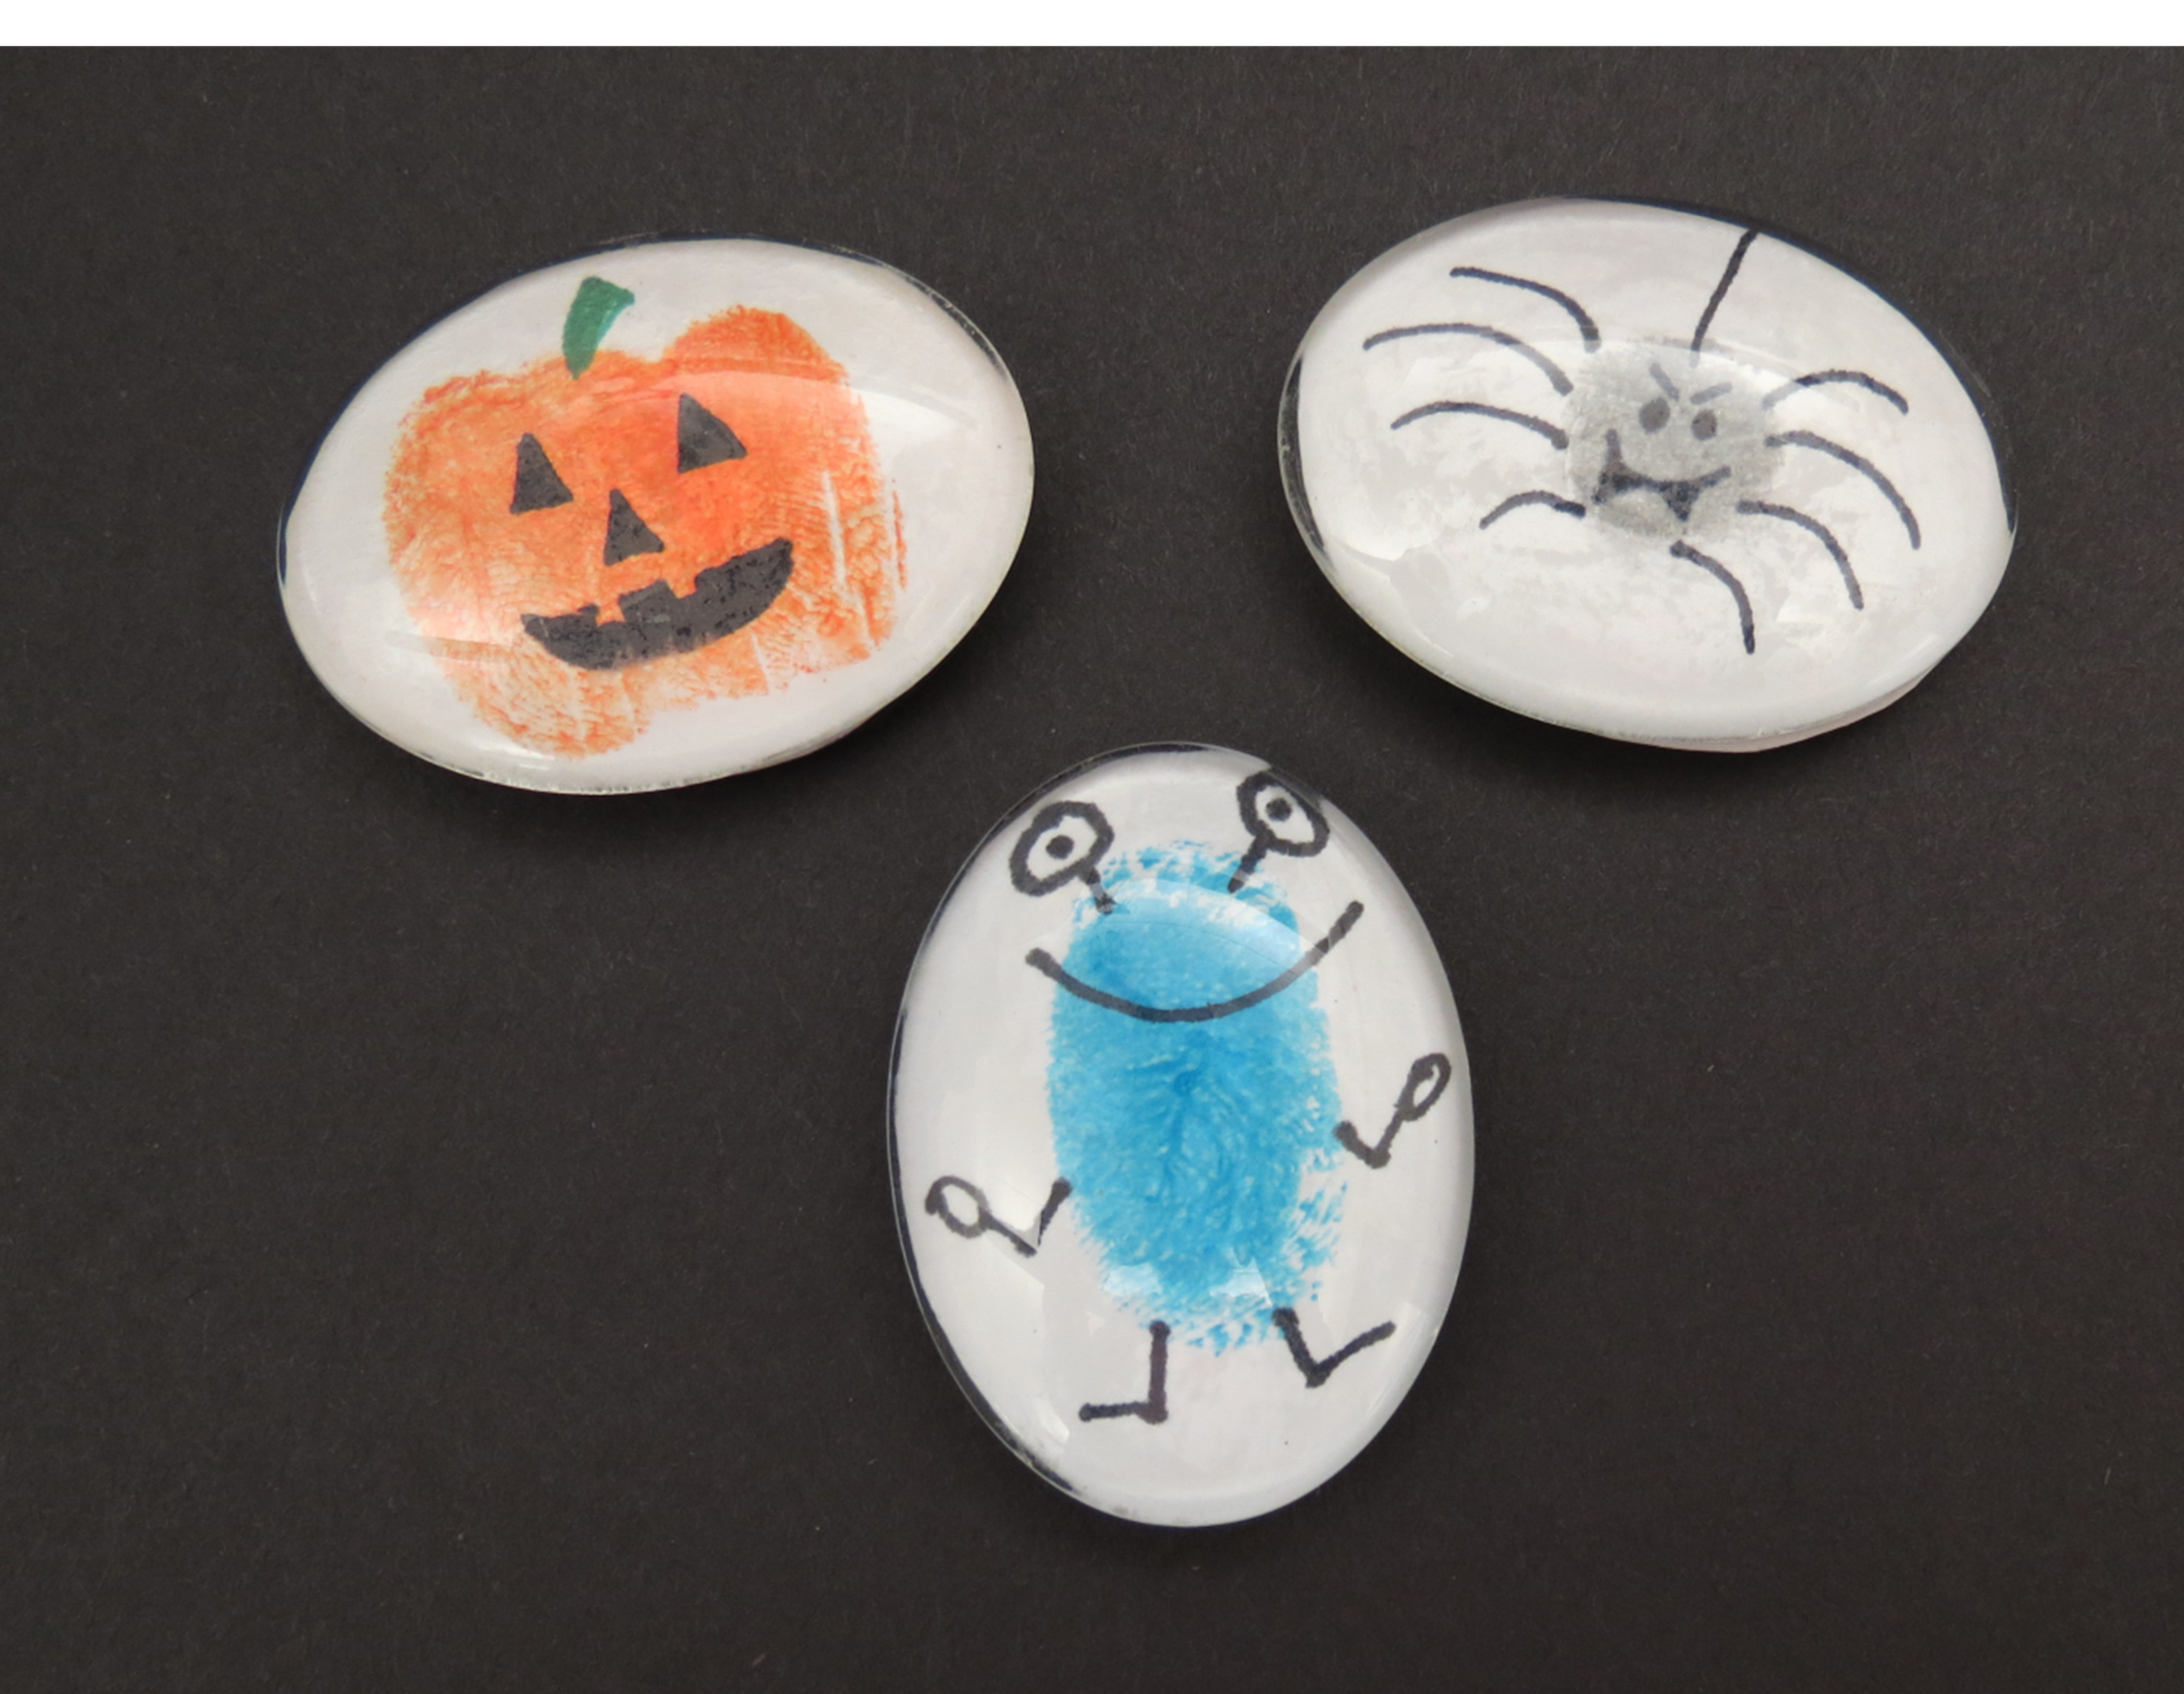 Pumpkin, spider, and monster fingerprint art.